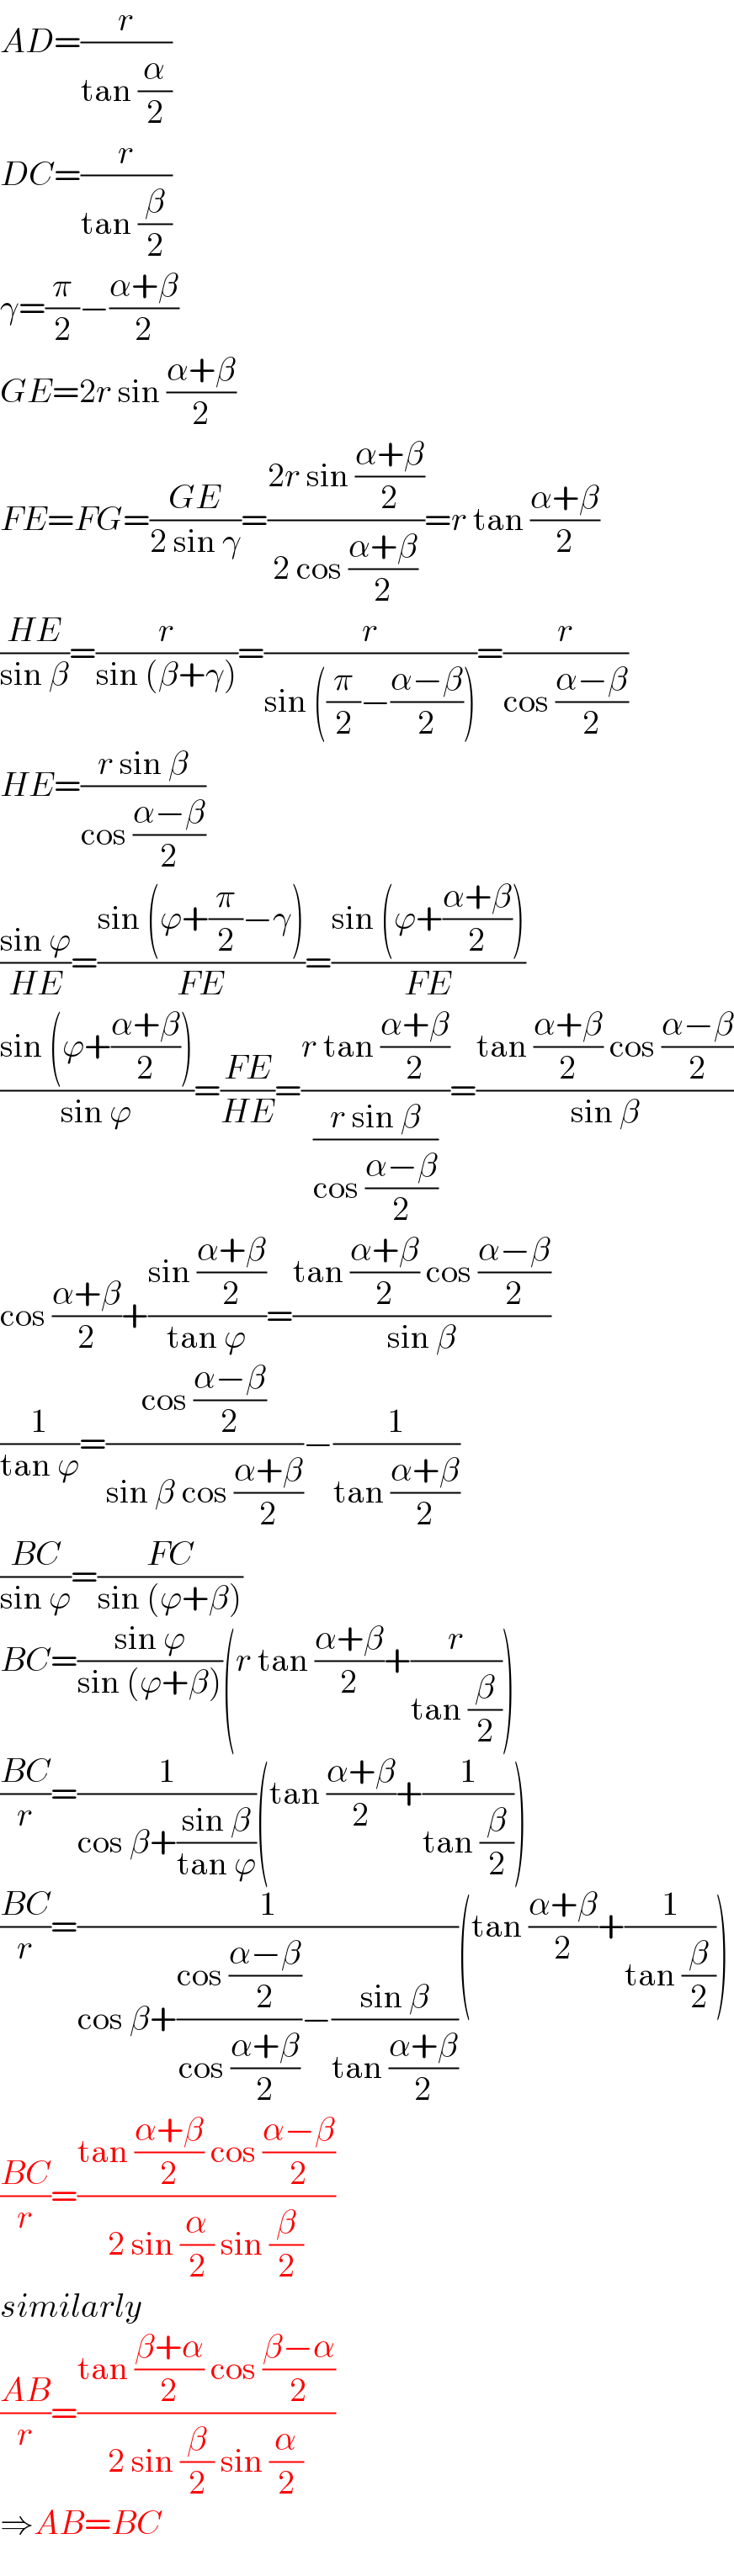 AD=(r/(tan (α/2)))  DC=(r/(tan (β/2)))  γ=(π/2)−((α+β)/2)  GE=2r sin ((α+β)/2)  FE=FG=((GE)/(2 sin γ))=((2r sin ((α+β)/2))/(2 cos ((α+β)/2)))=r tan ((α+β)/2)  ((HE)/(sin β))=(r/(sin (β+γ)))=(r/(sin ((π/2)−((α−β)/2))))=(r/(cos ((α−β)/2)))  HE=((r sin β)/(cos ((α−β)/2)))  ((sin ϕ)/(HE))=((sin (ϕ+(π/2)−γ))/(FE))=((sin (ϕ+((α+β)/2)))/(FE))  ((sin (ϕ+((α+β)/2)))/(sin ϕ))=((FE)/(HE))=((r tan ((α+β)/2))/((r sin β)/(cos ((α−β)/2))))=((tan ((α+β)/2) cos ((α−β)/2))/(sin β))  cos ((α+β)/2)+((sin ((α+β)/2))/(tan ϕ))=((tan ((α+β)/2) cos ((α−β)/2))/(sin β))  (1/(tan ϕ))=((cos ((α−β)/2))/(sin β cos ((α+β)/2)))−(1/(tan ((α+β)/2)))  ((BC)/(sin ϕ))=((FC)/(sin (ϕ+β)))  BC=((sin ϕ)/(sin (ϕ+β)))(r tan ((α+β)/2)+(r/(tan (β/2))))  ((BC)/r)=(1/(cos β+((sin β)/(tan ϕ))))(tan ((α+β)/2)+(1/(tan (β/2))))  ((BC)/r)=(1/(cos β+((cos ((α−β)/2))/(cos ((α+β)/2)))−((sin β)/(tan ((α+β)/2)))))(tan ((α+β)/2)+(1/(tan (β/2))))  ((BC)/r)=((tan ((α+β)/2) cos ((α−β)/2))/(2 sin (α/2) sin (β/2)))  similarly  ((AB)/r)=((tan ((β+α)/2) cos ((β−α)/2))/(2 sin (β/2) sin (α/2)))  ⇒AB=BC  